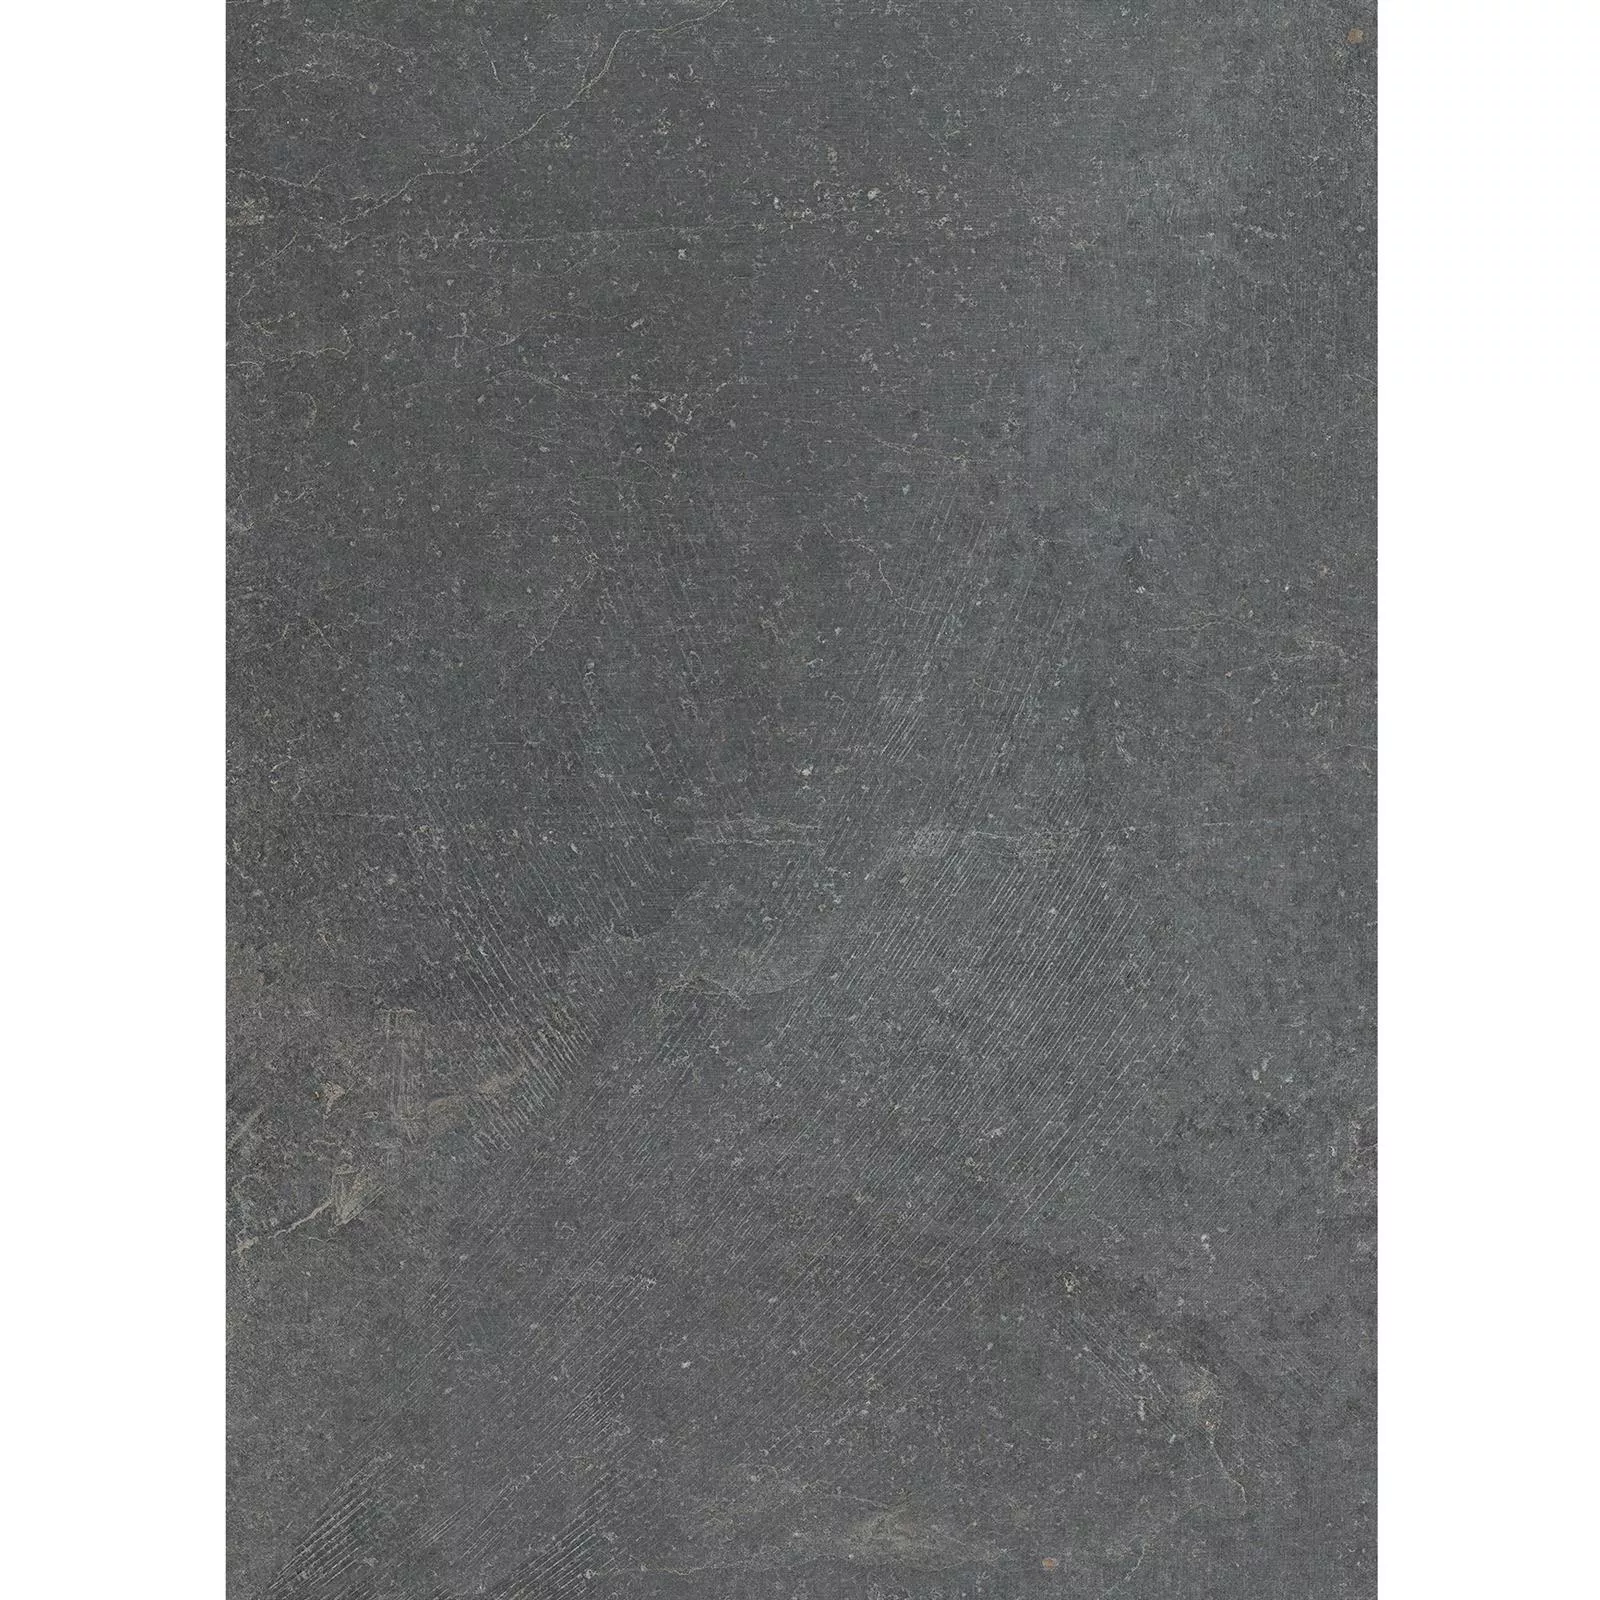 Ladrilhos Olhar de Pedra Horizon Antracite 60x120cm